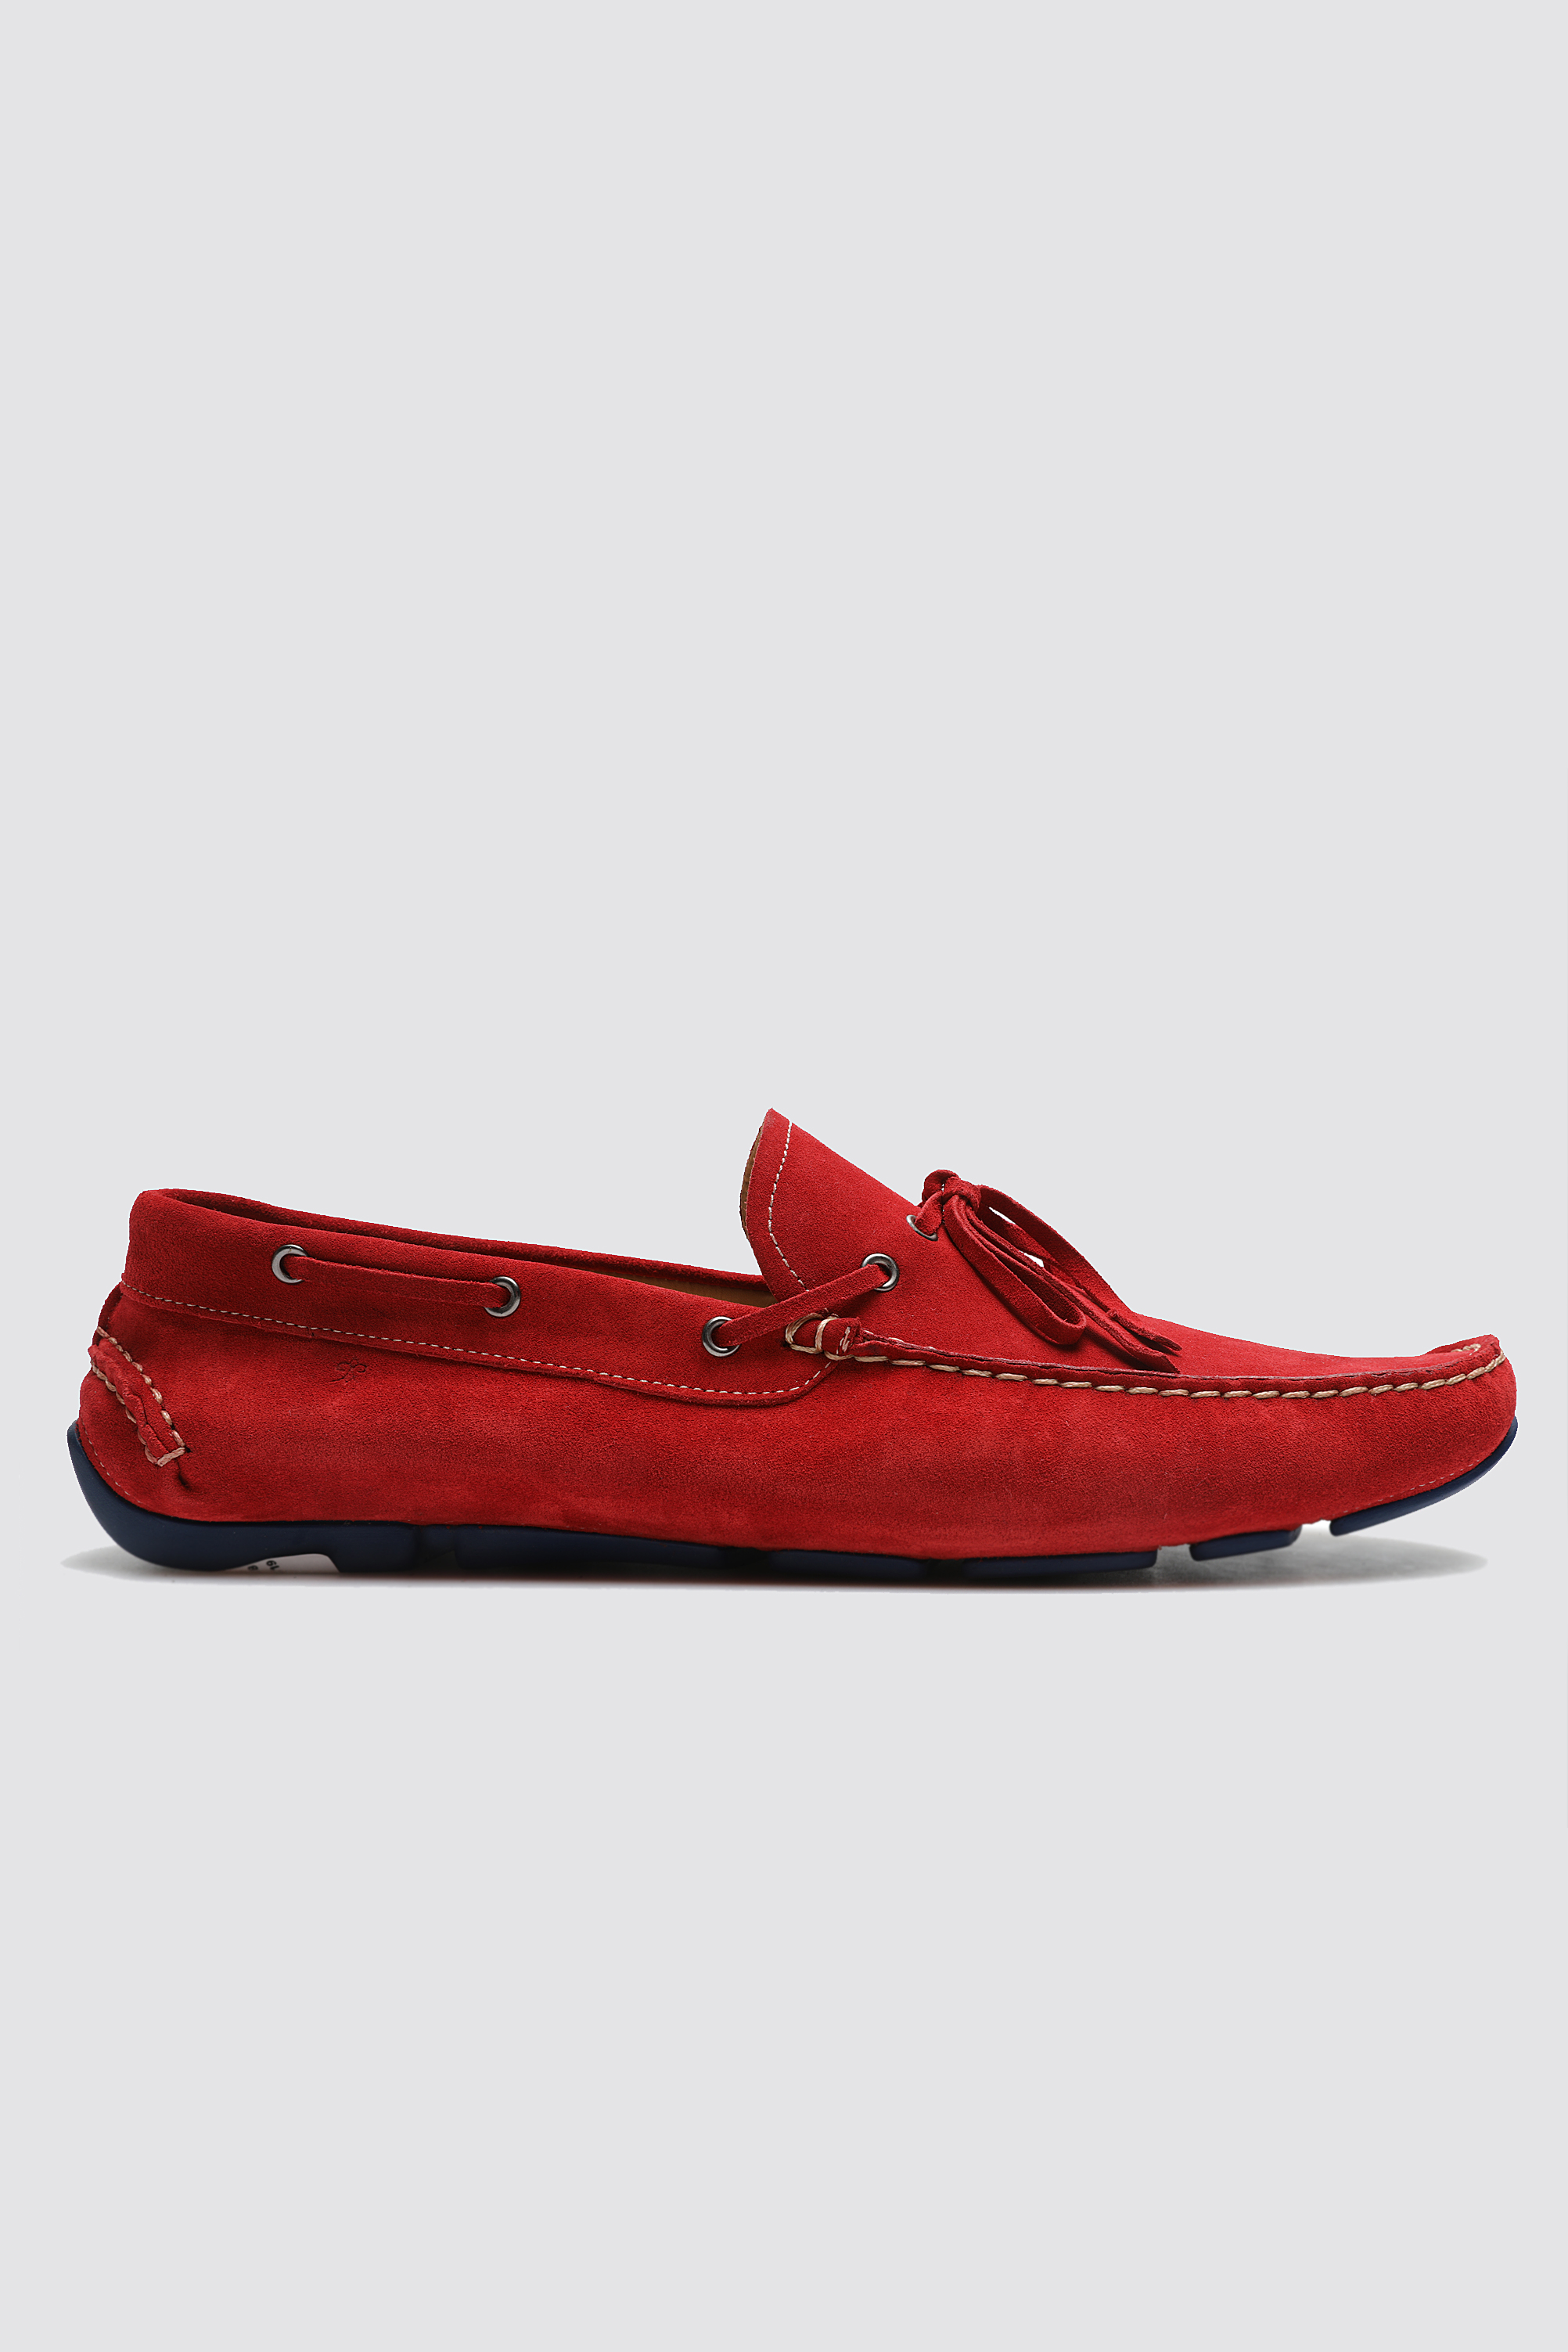 Damat Tween Damat Kırmızı Ayakkabı. 3